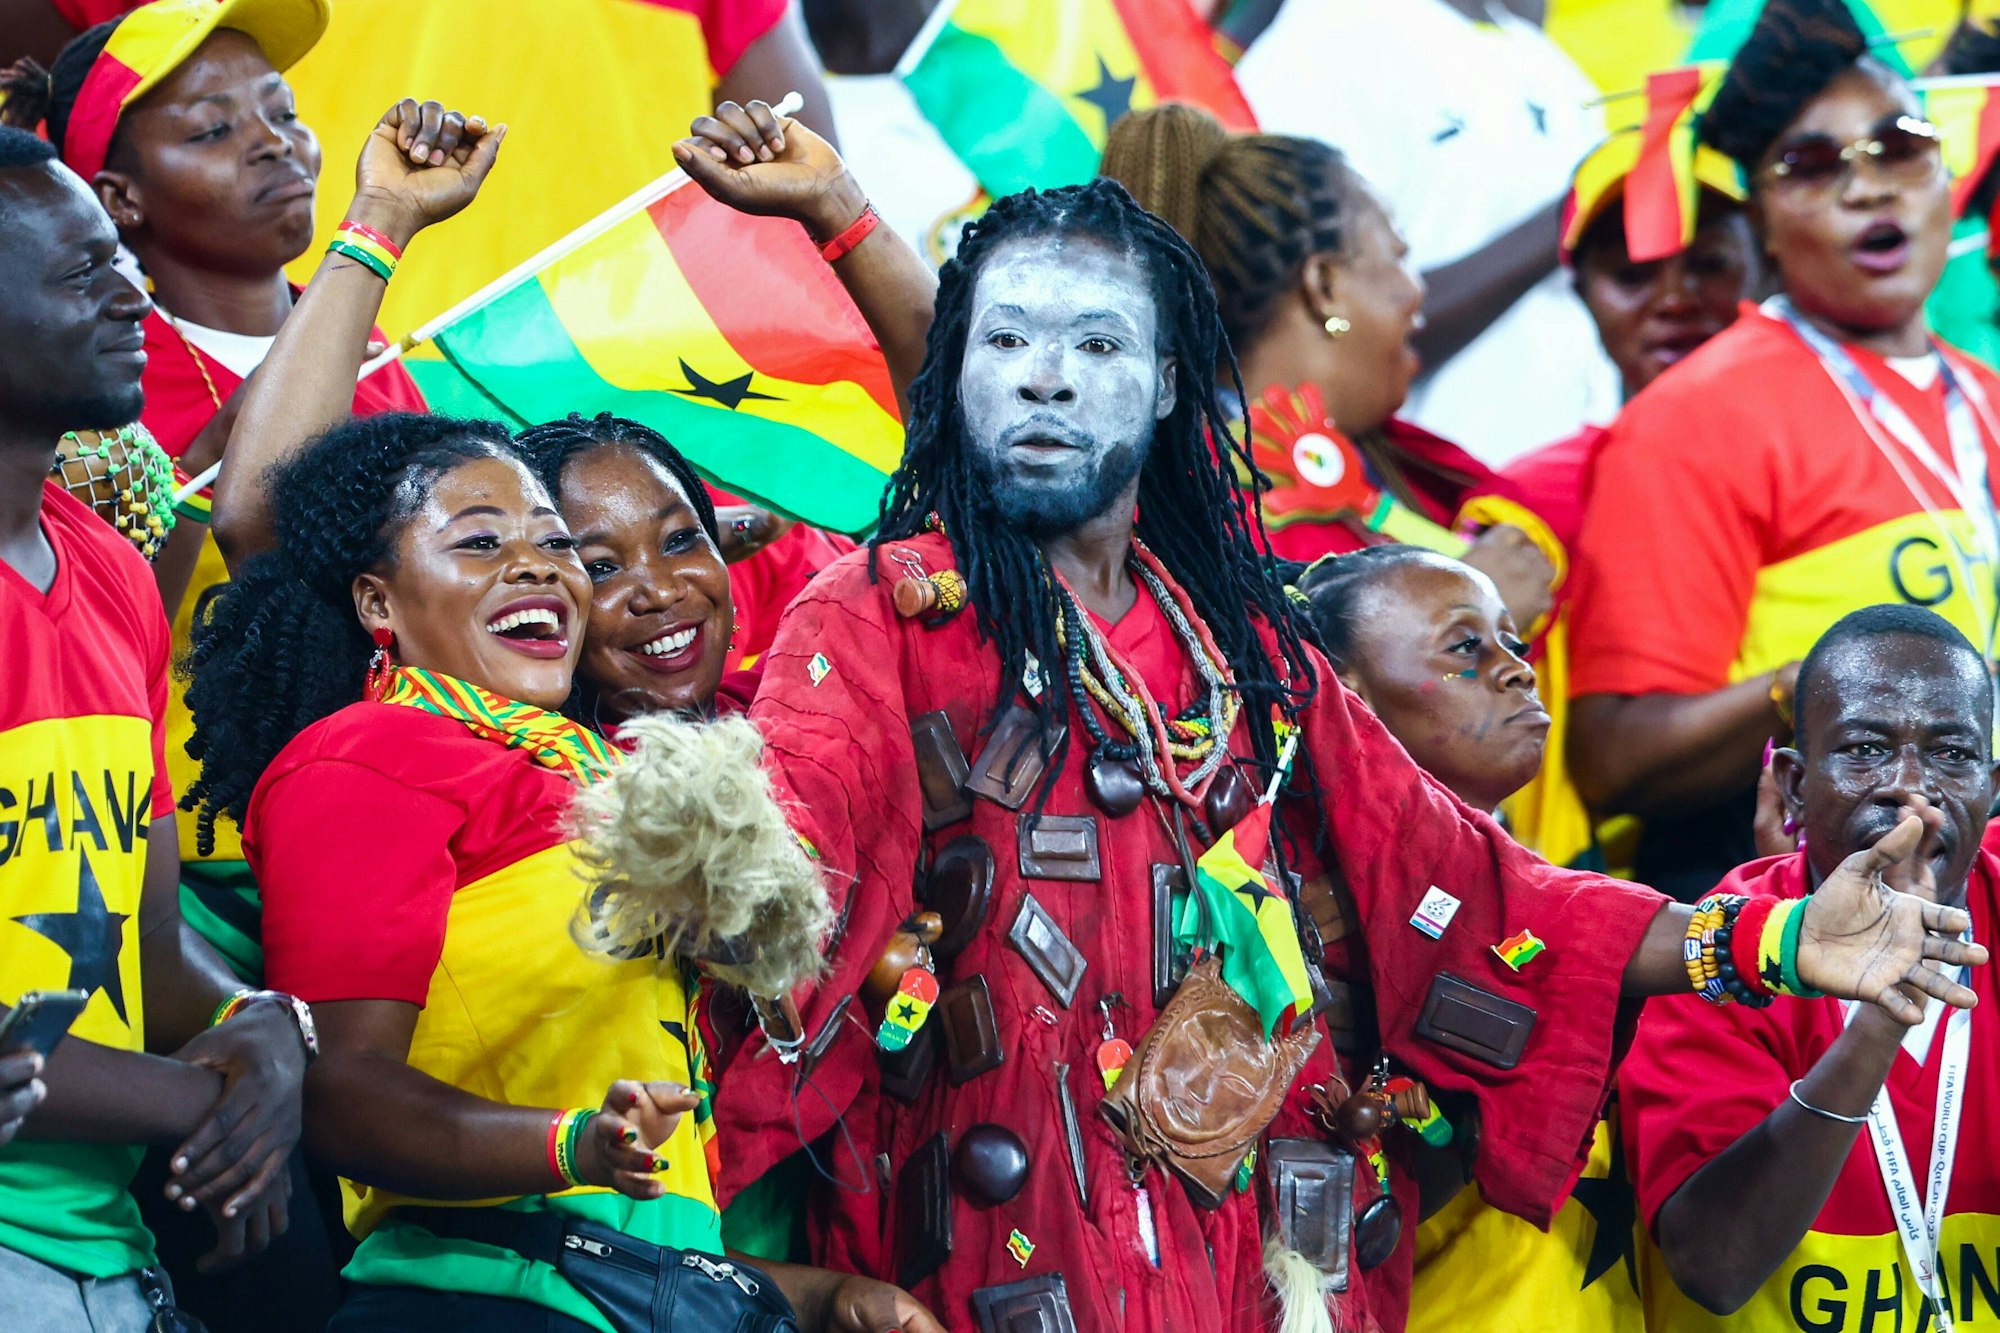 Ein Ghana-Fan mit weiß bemalten Gesicht und rotem Gewand schaut entsetzt auf der Tribüne.